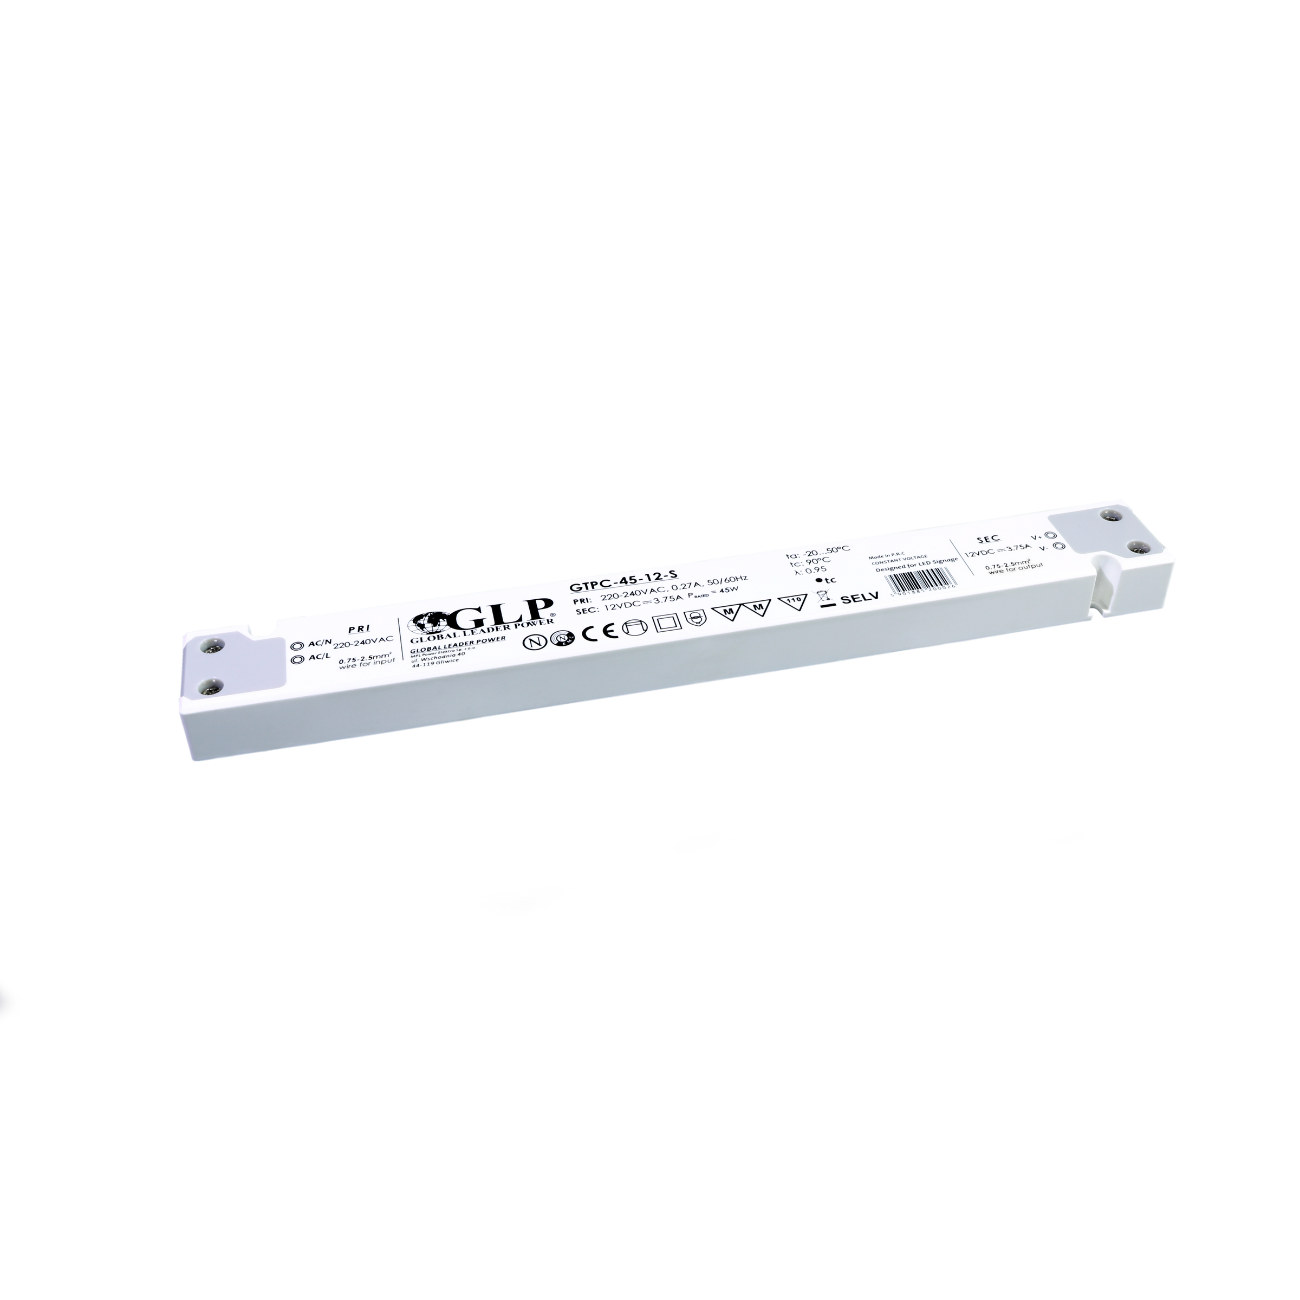 GTPC-45-12-S (45W/12V) LED-Netzteil (slim)